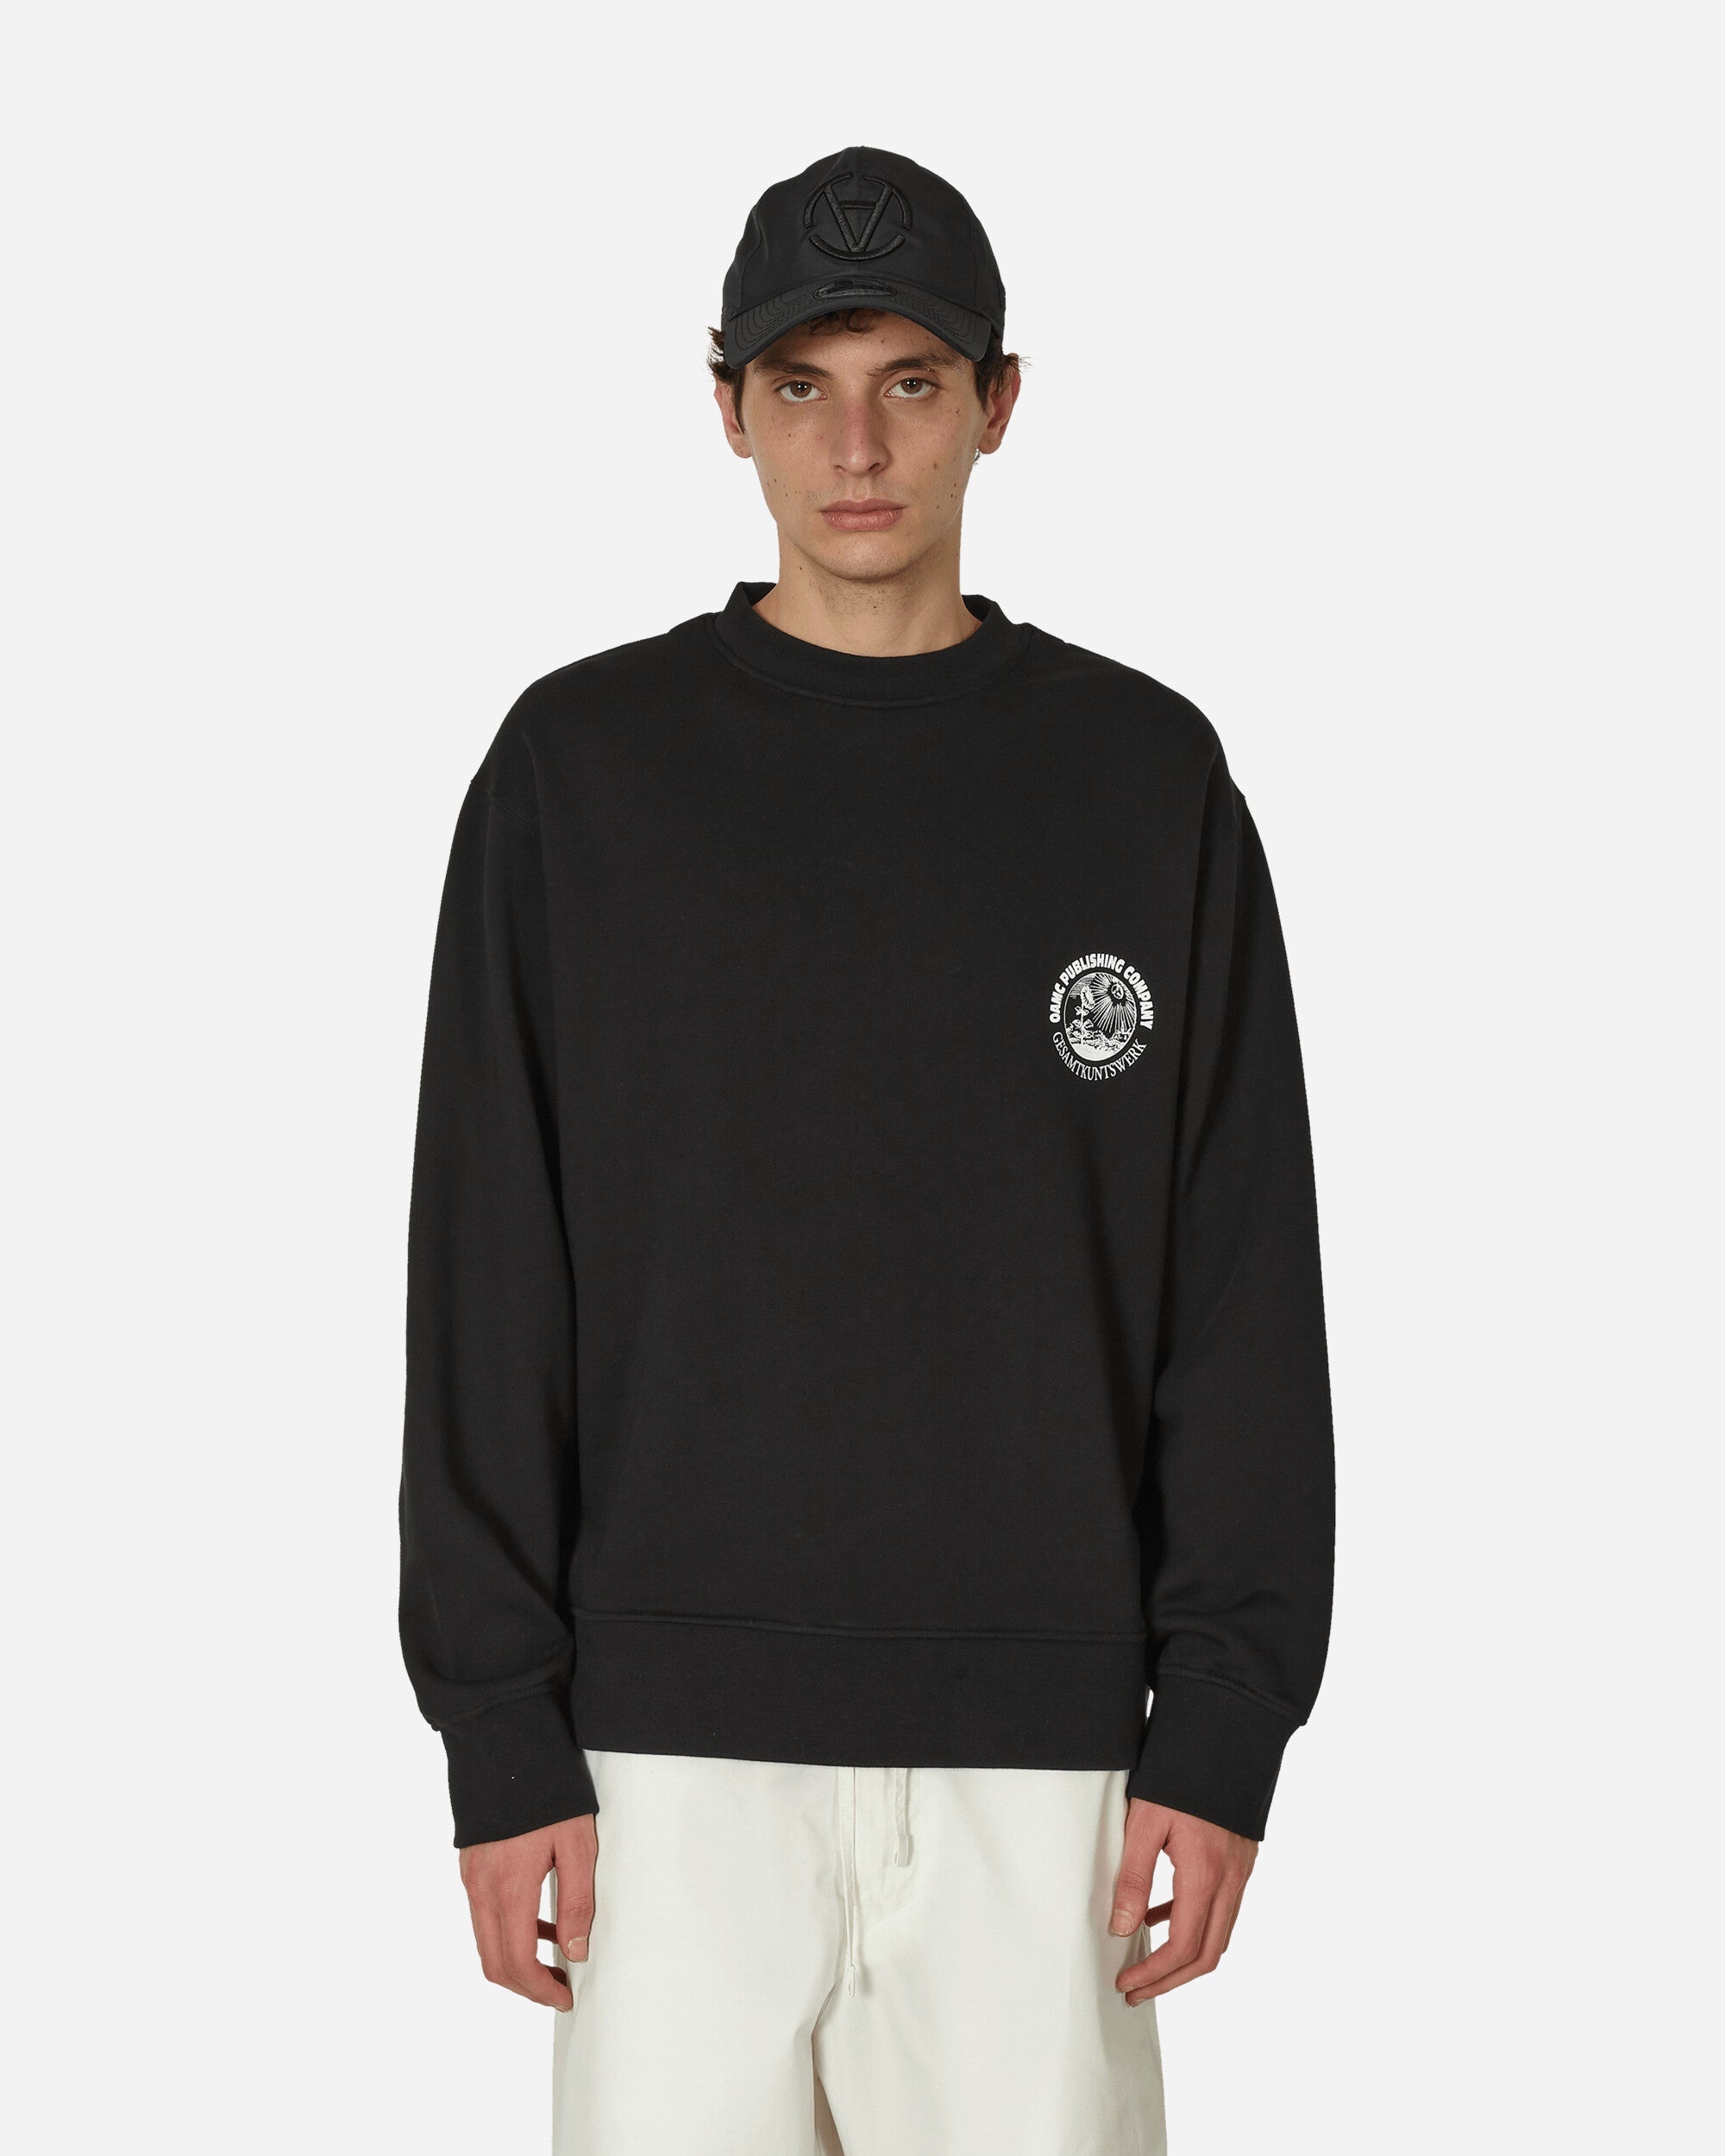 Apollo Crewneck Sweatshirt Black - 1